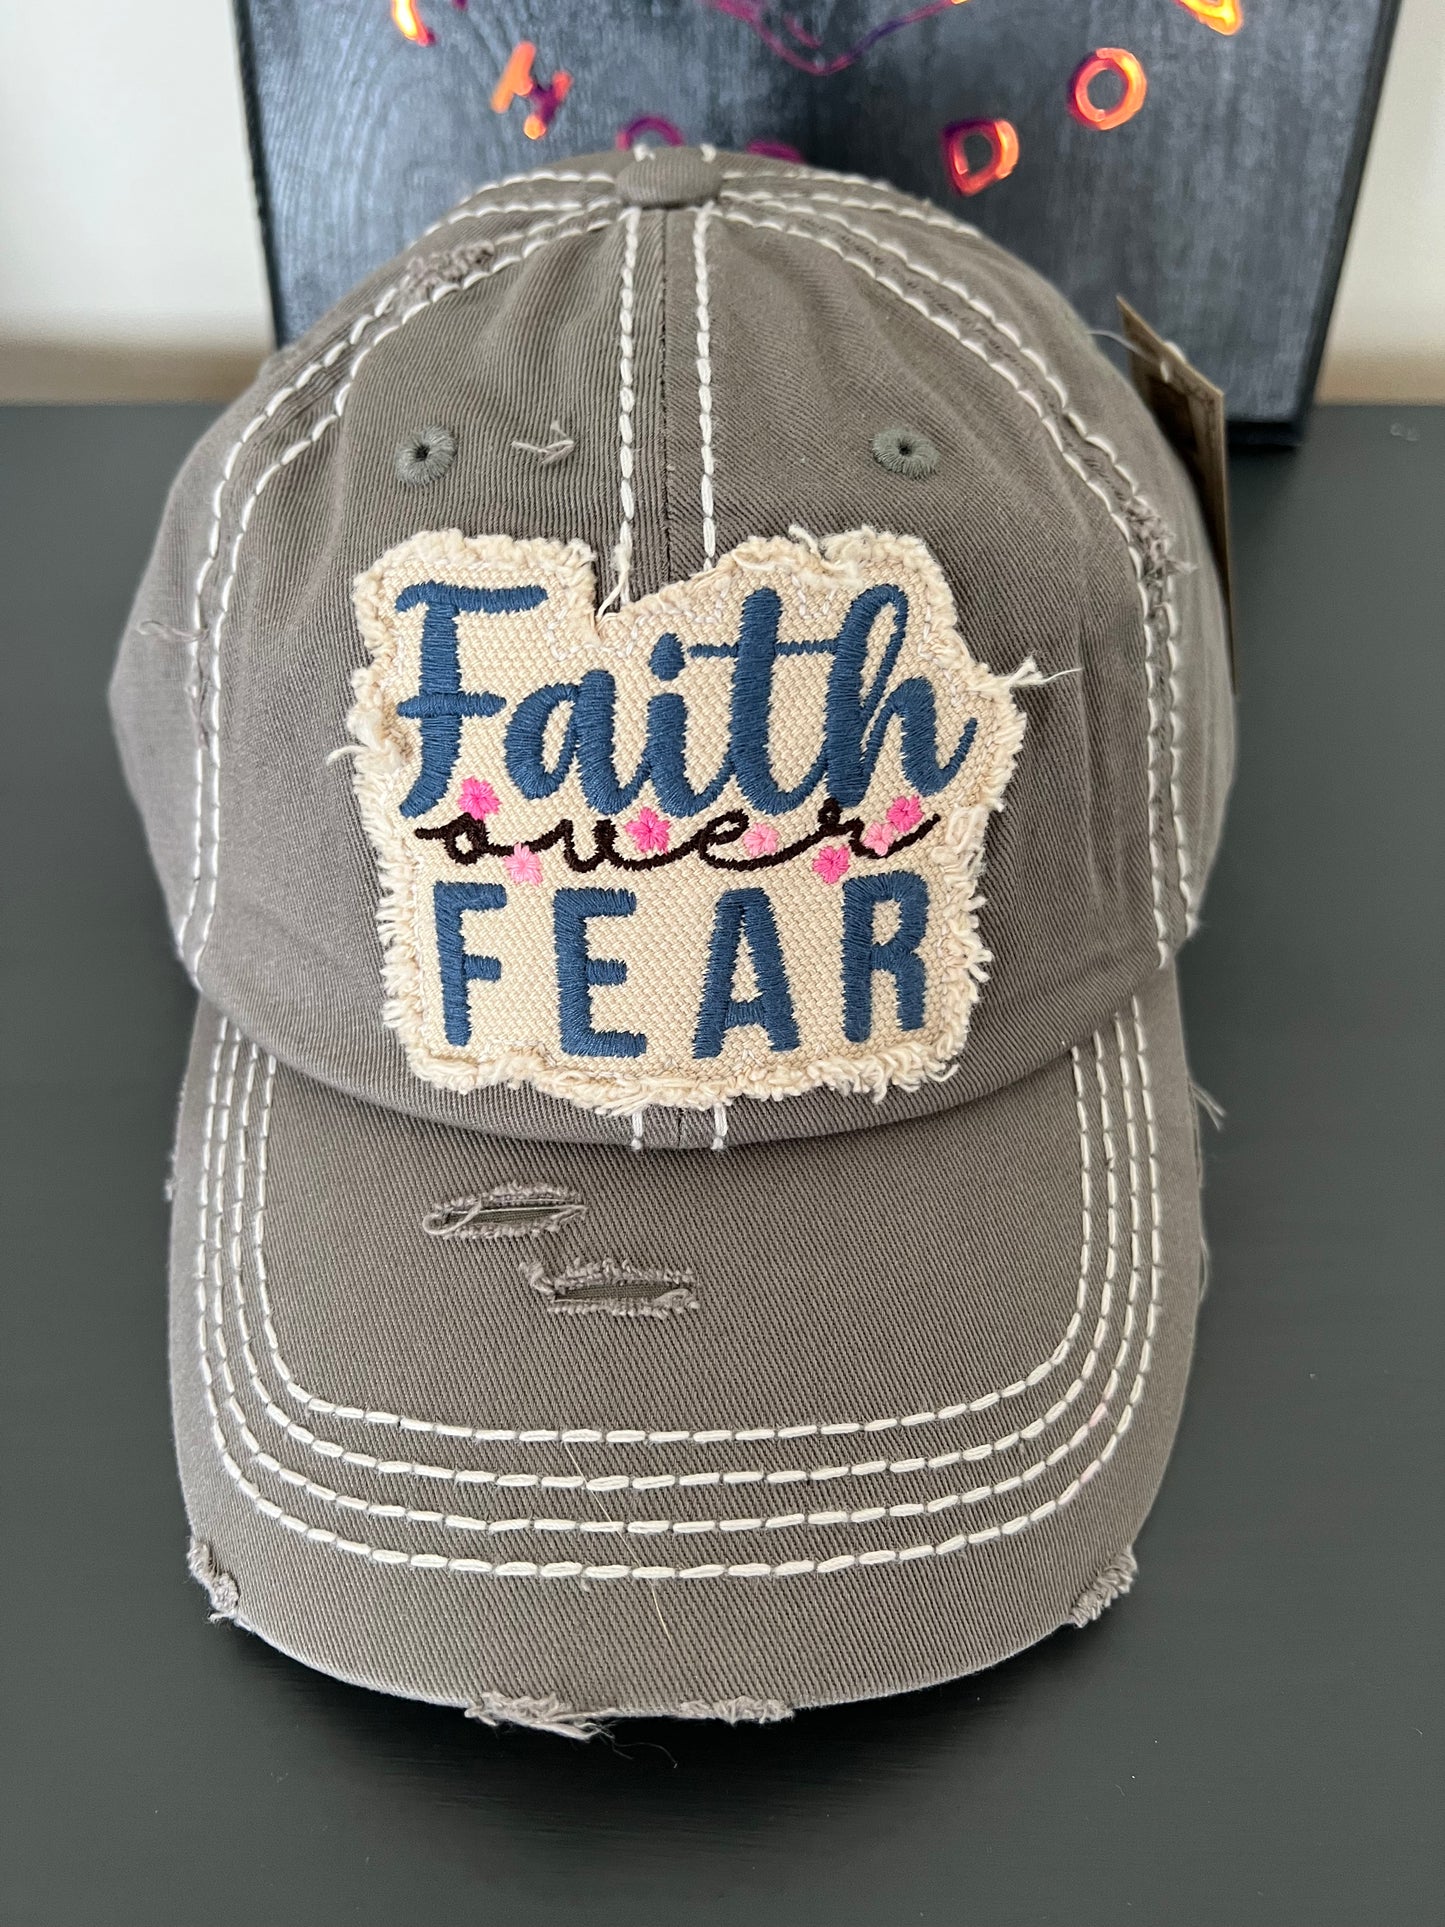 Faith over fear hat